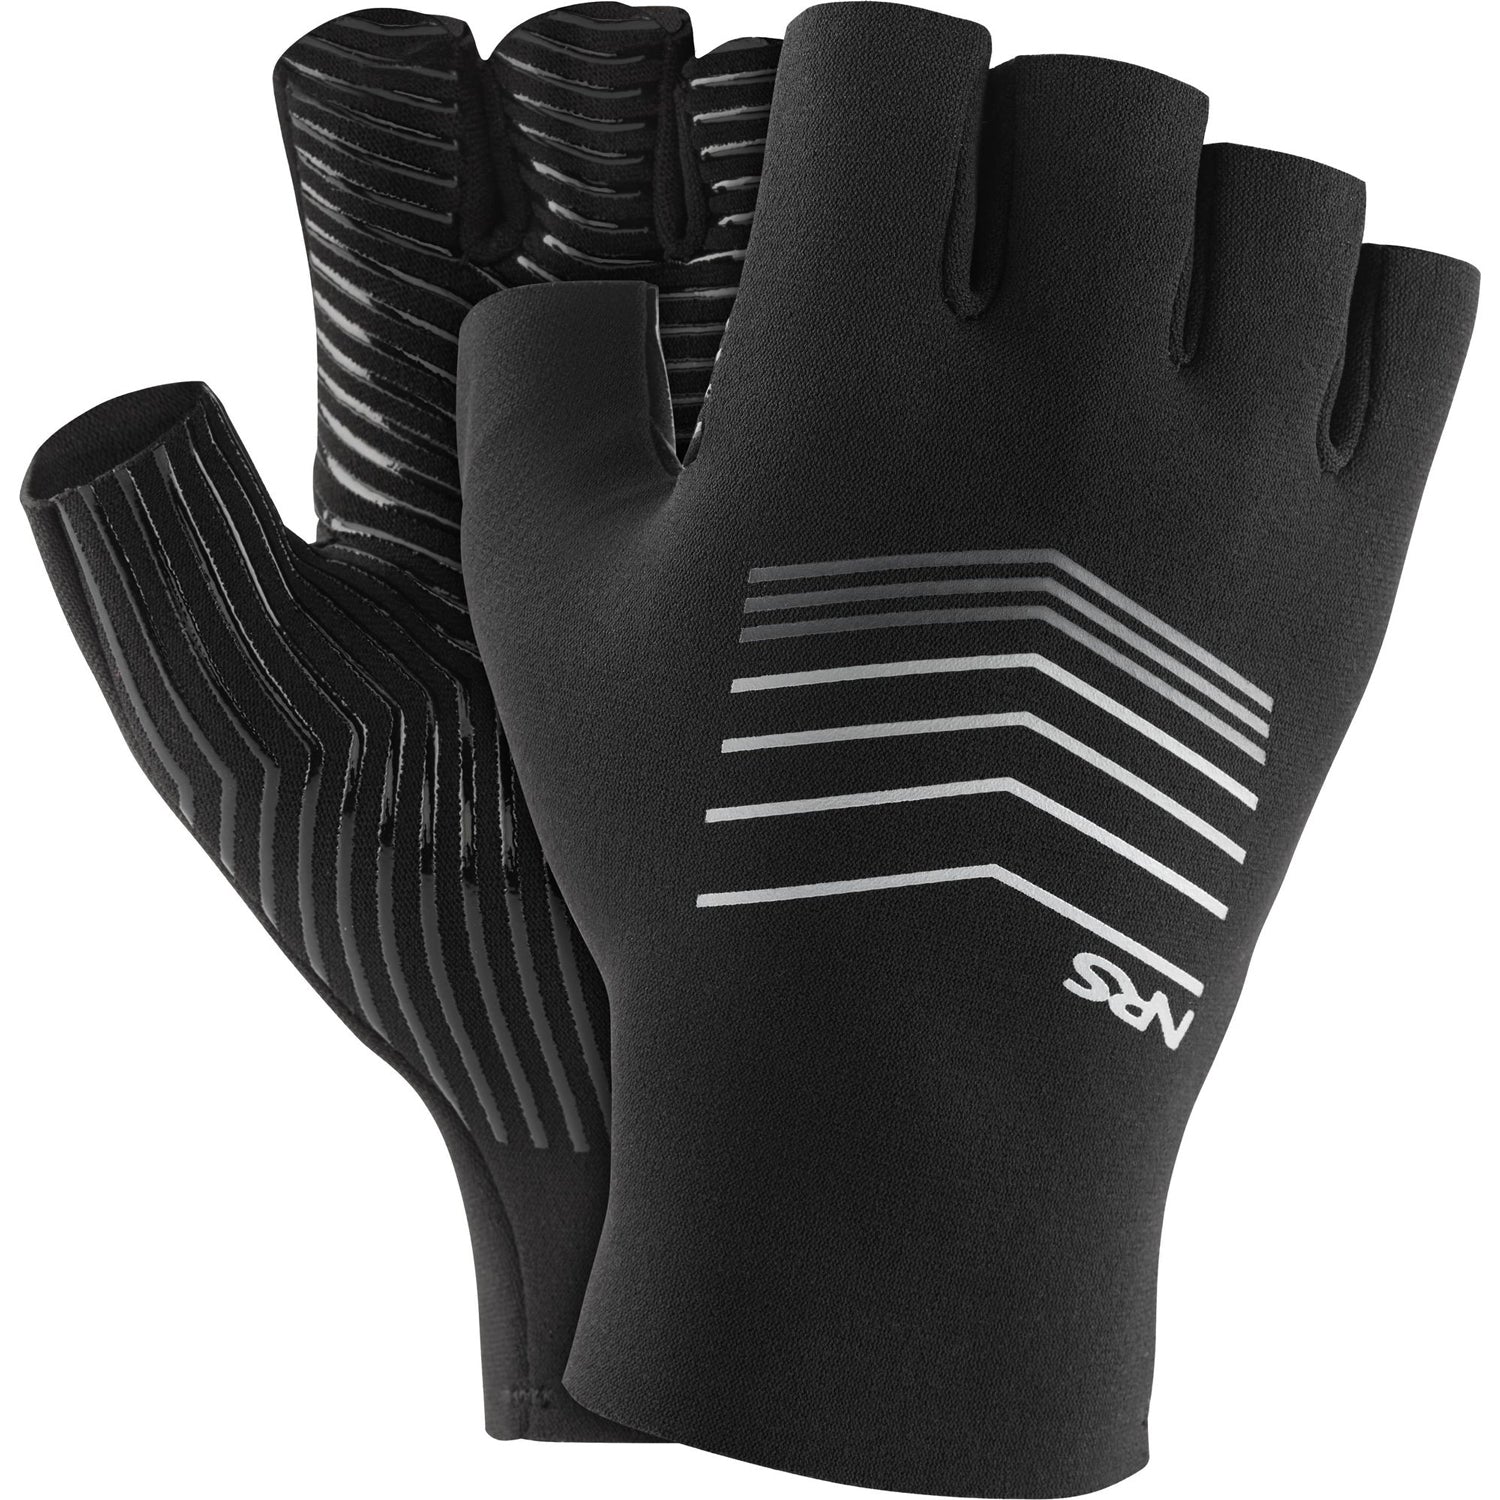 NRS Guide Gloves, L / Black